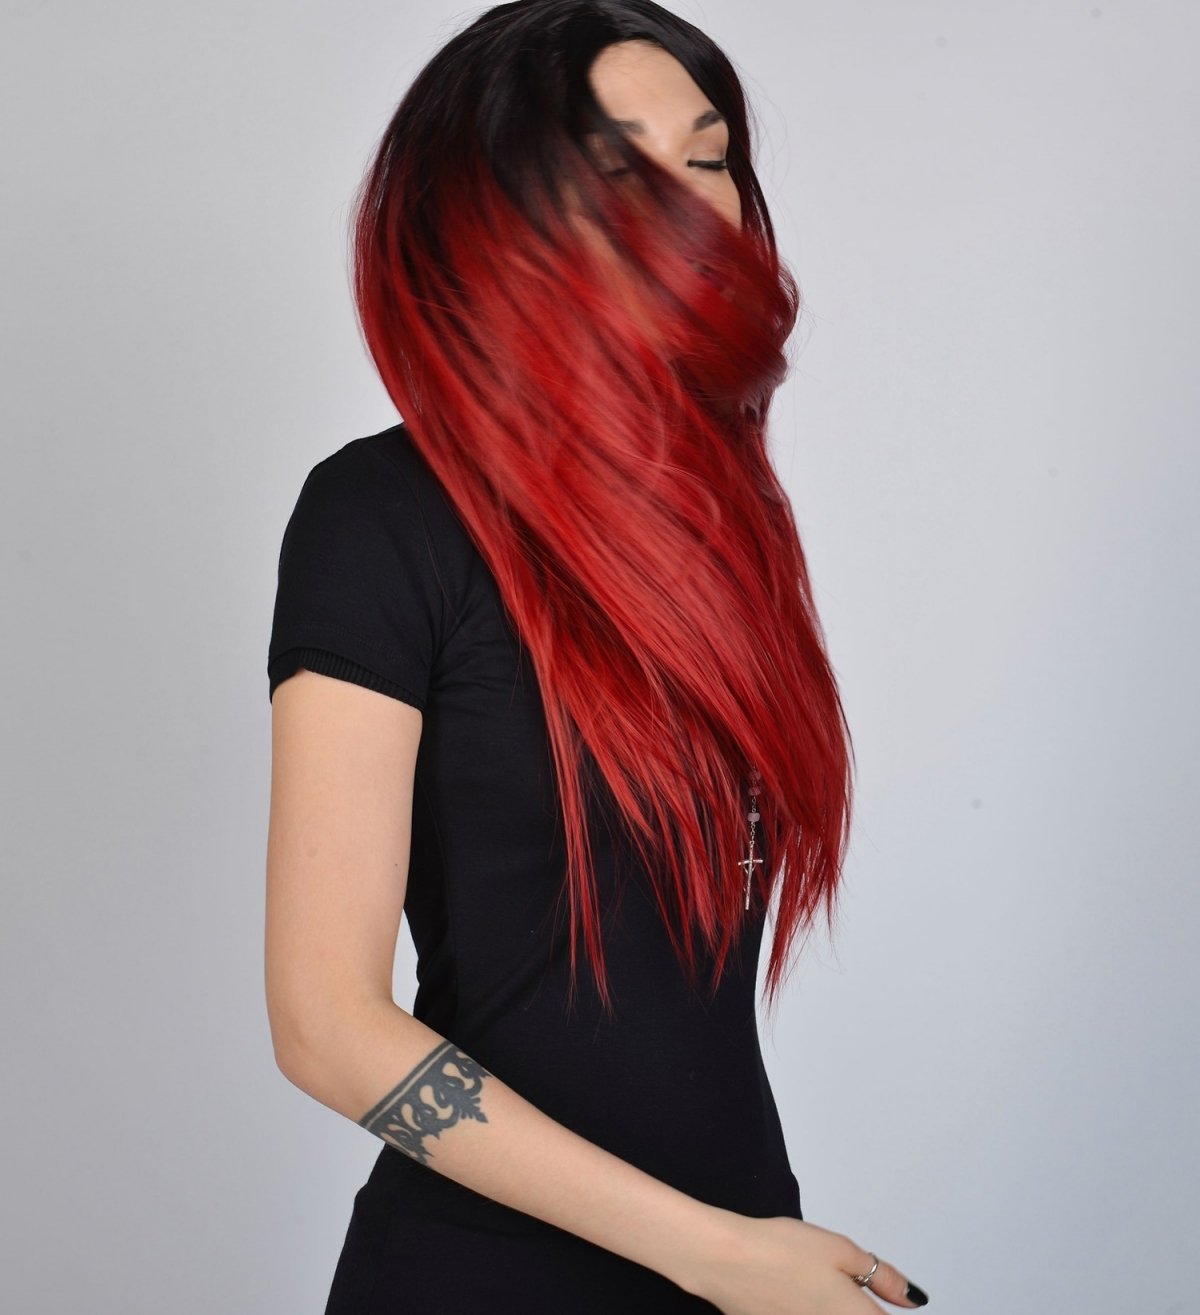 Корни волос красные. Черно красное окрашивание волос. Красно черные волосы. Красные волосы окрашивание. Окрашивание кончиков в красный.